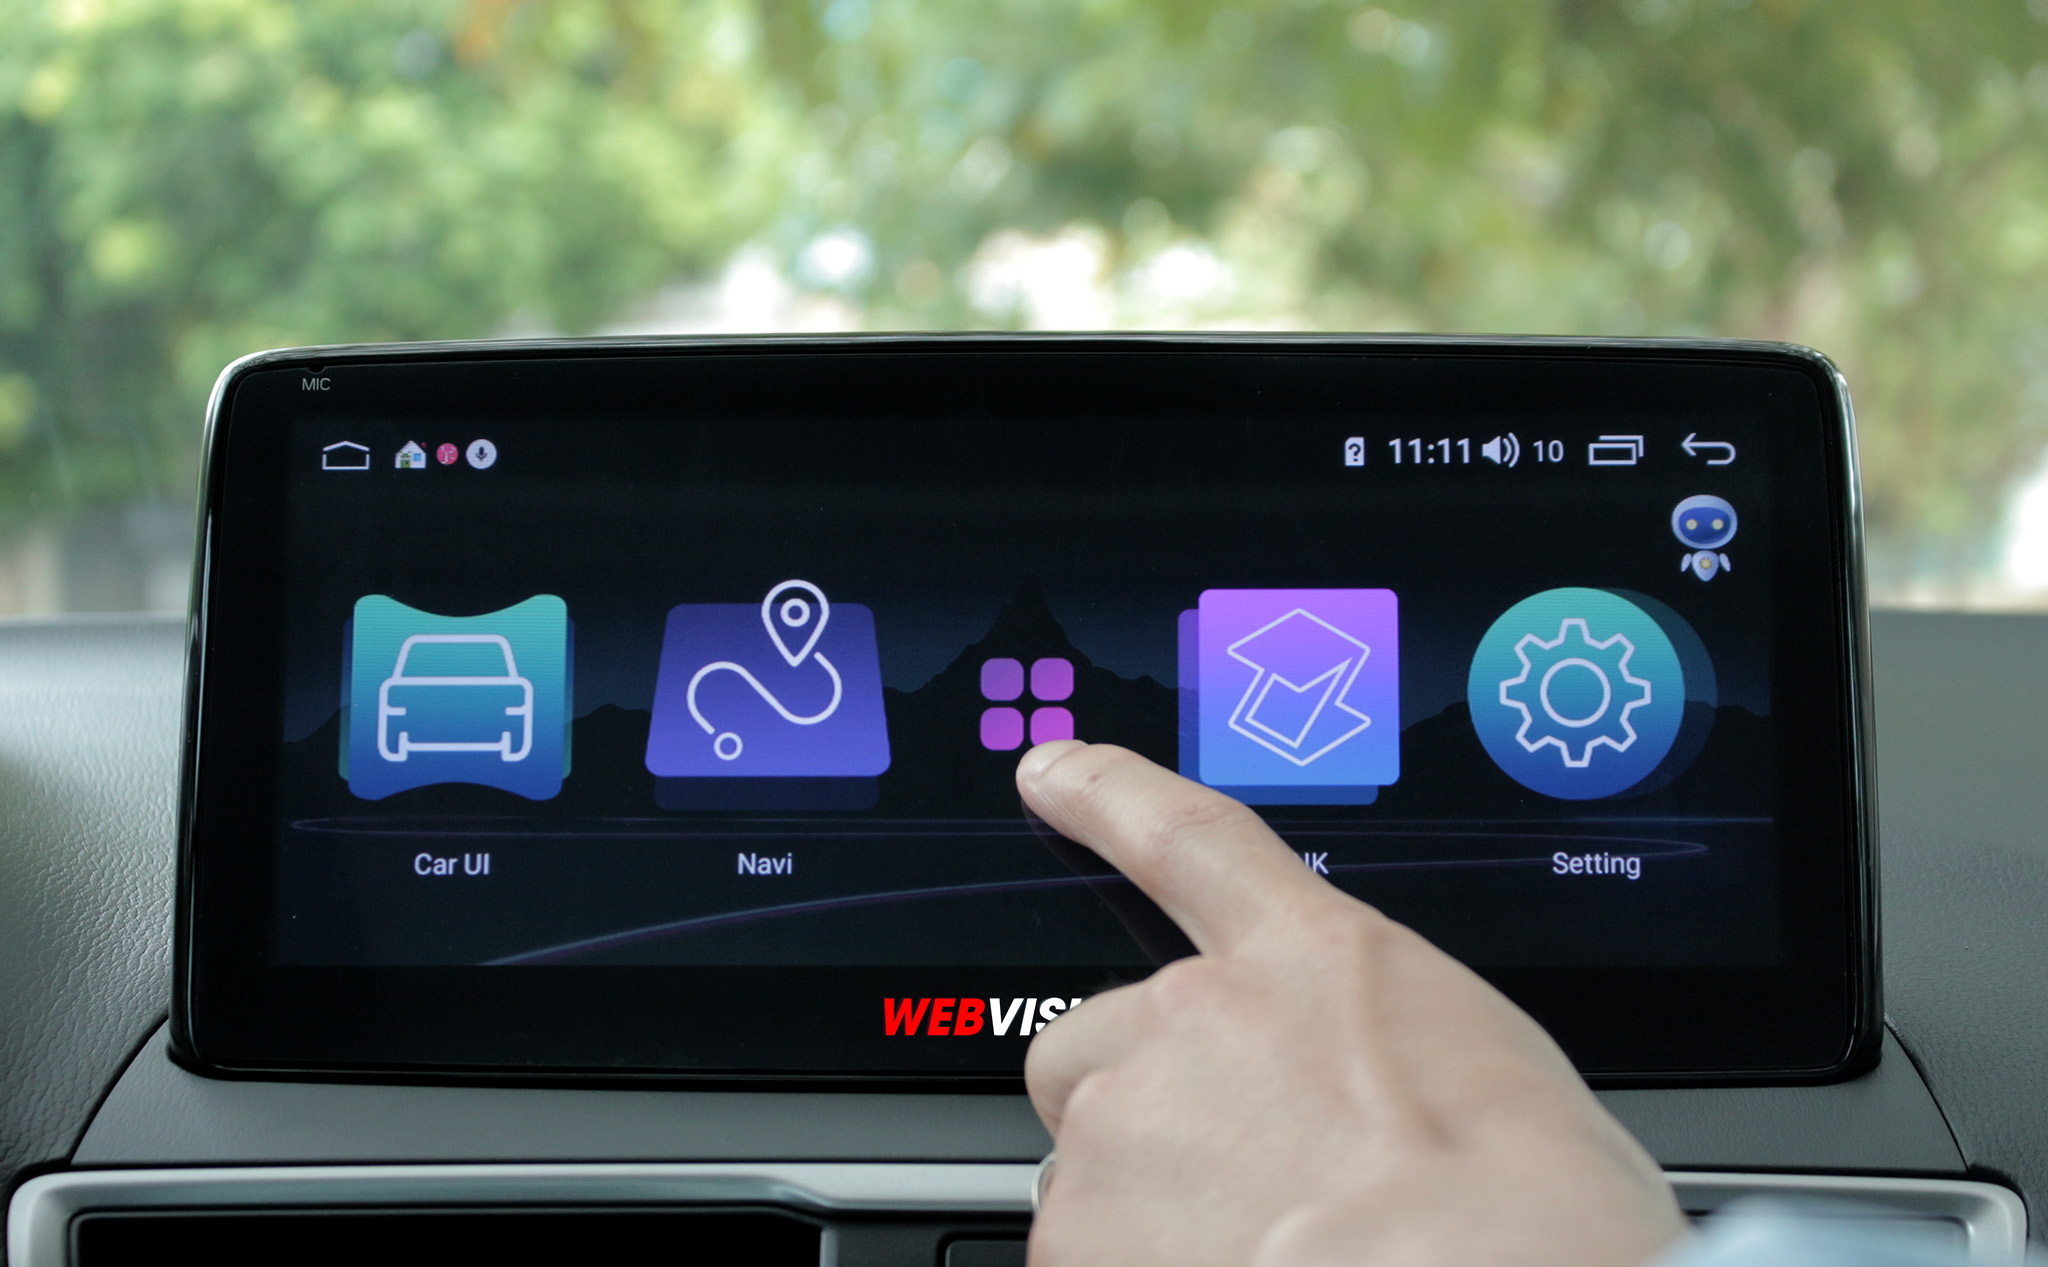 [QC] Độc quyền DVD Webvision – màn hình Mazda được “săn lùng” năm 2020